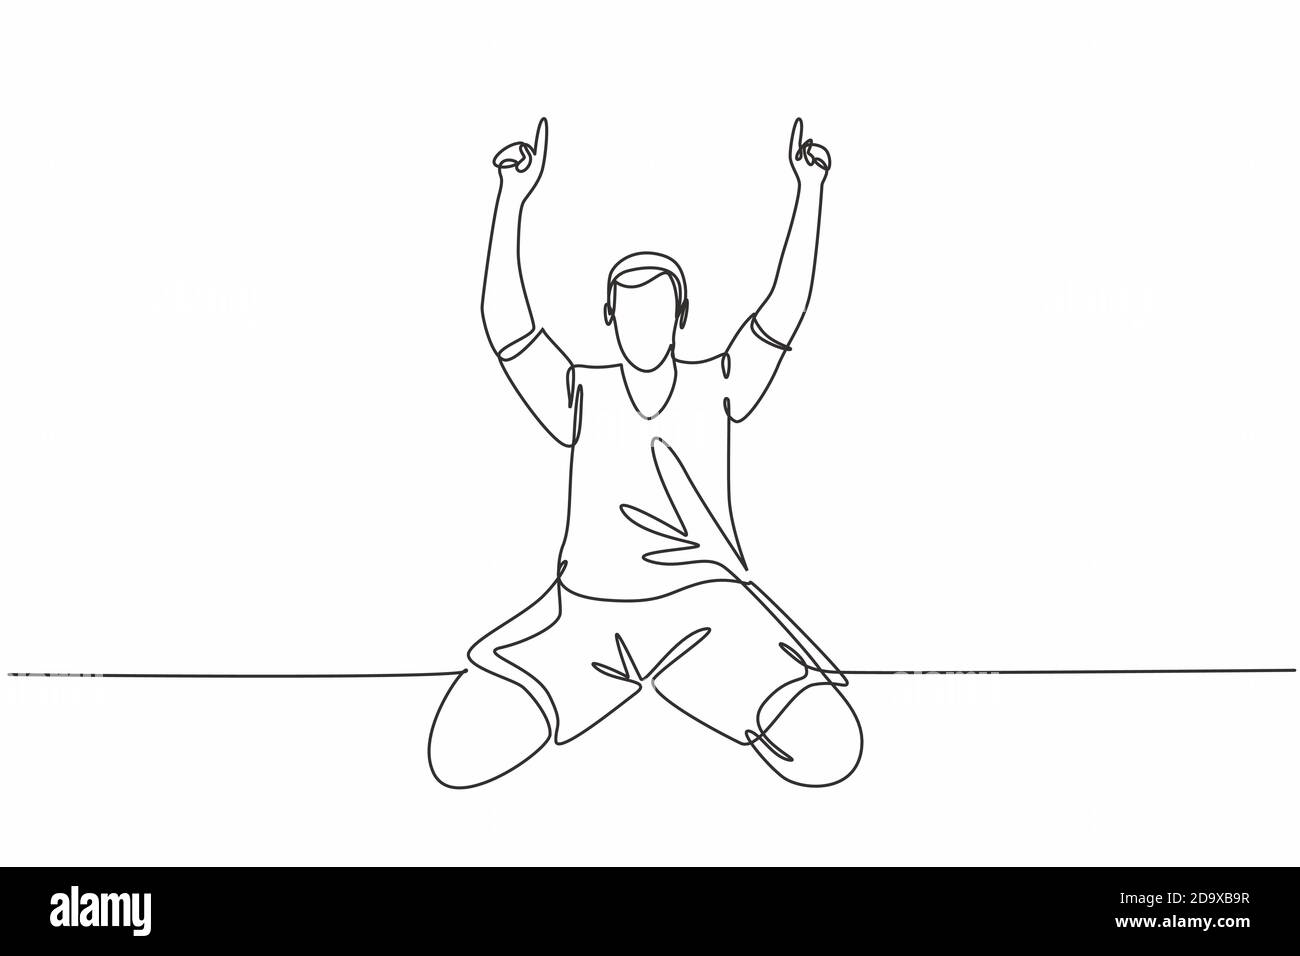 Un disegno a linea singola del giovane giocatore di calcio che punta le dita verso il cielo celebrando il suo goal segnando sul campo. Concetto di celebrazione dell'obiettivo di corrispondenza Illustrazione Vettoriale